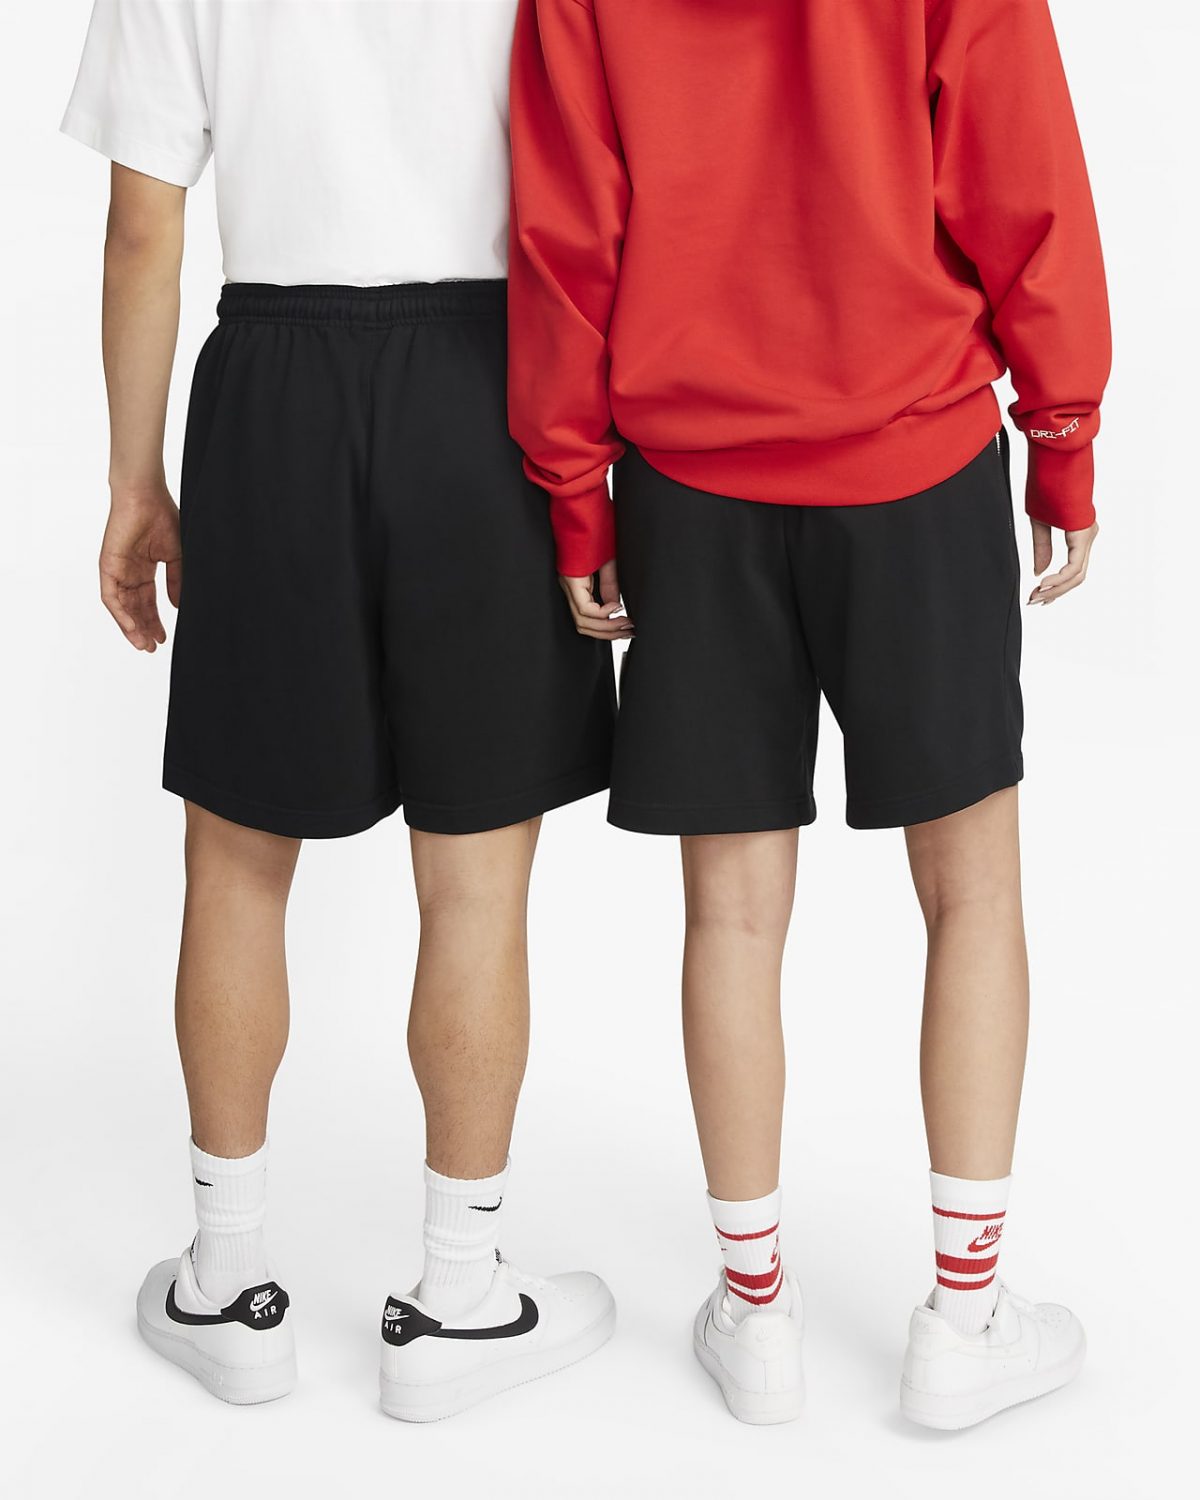 Мужские шорты Nike Dri-FIT Standard Issue фотография